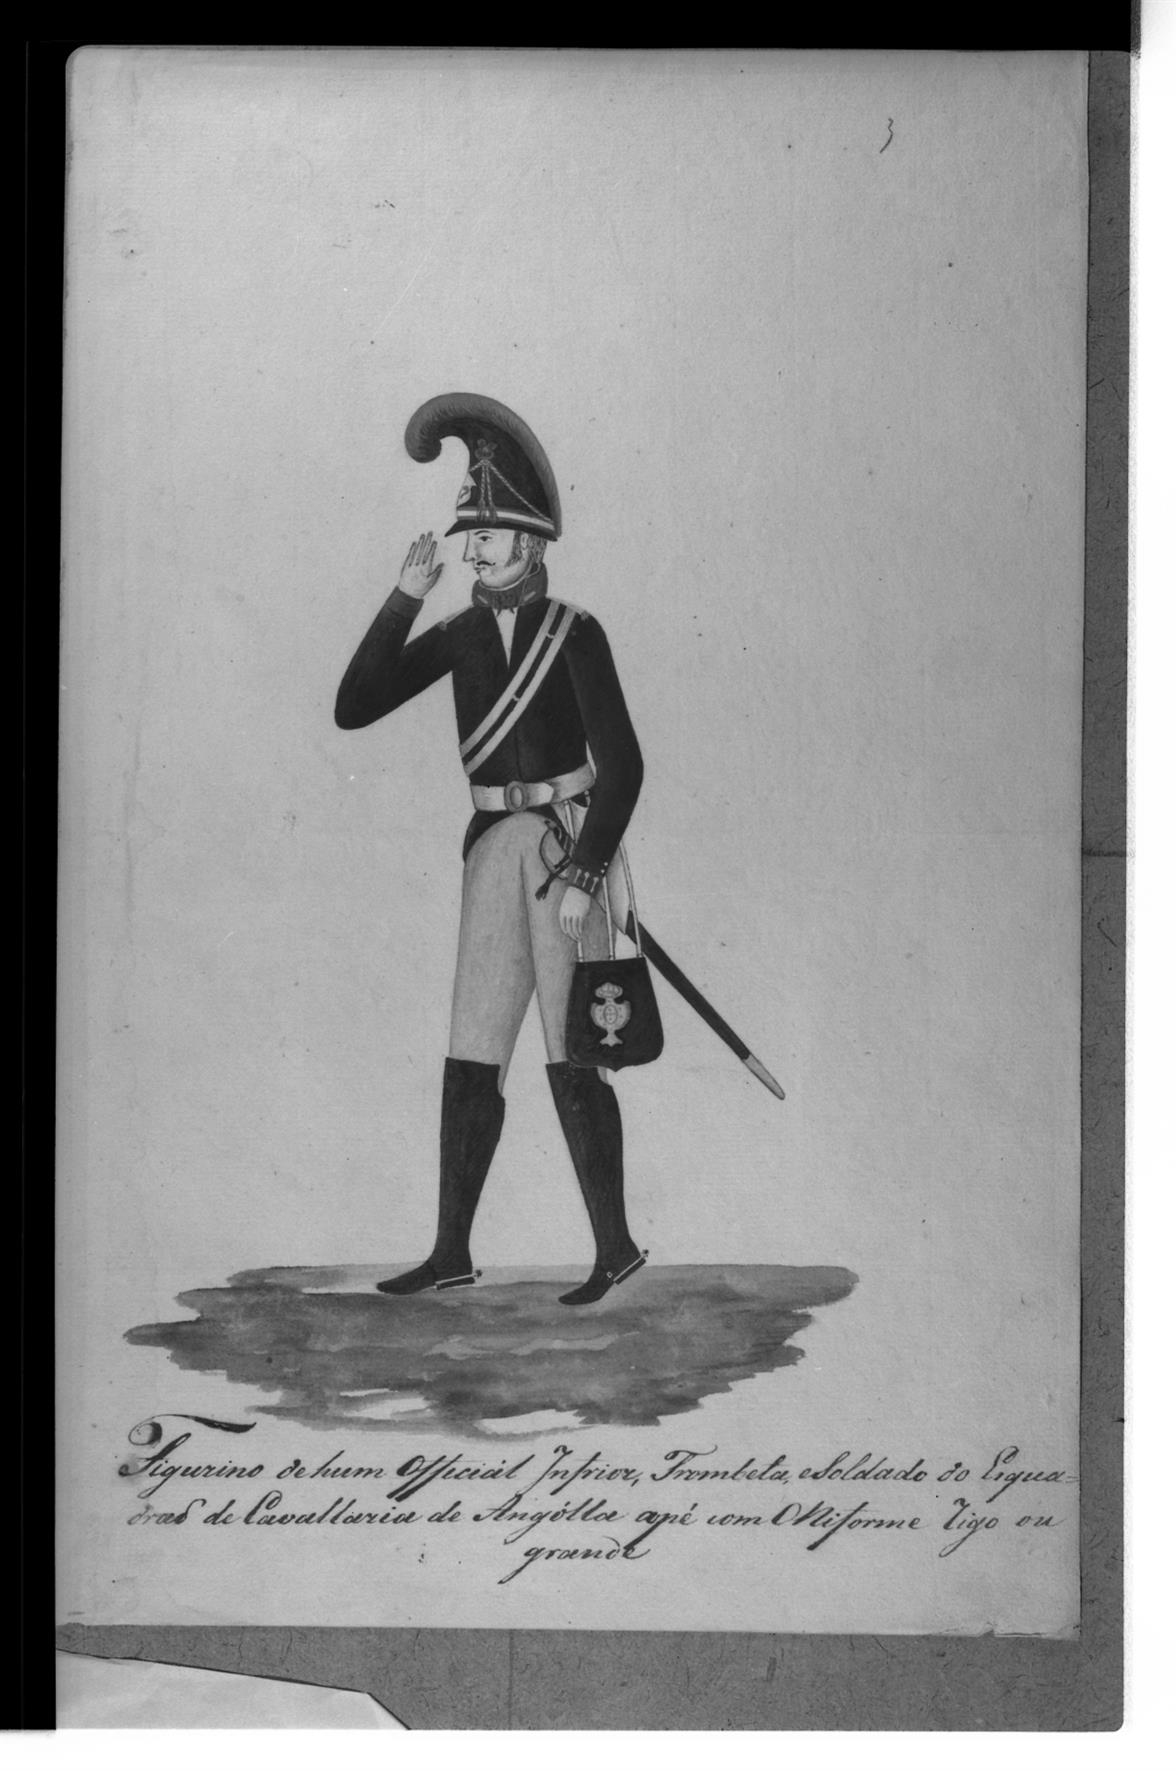 [Exposição Histórico-Militar] : uniforme de Oficial Inferior trombeta e soldado do Esquadrão de Cavalaria de Angolla